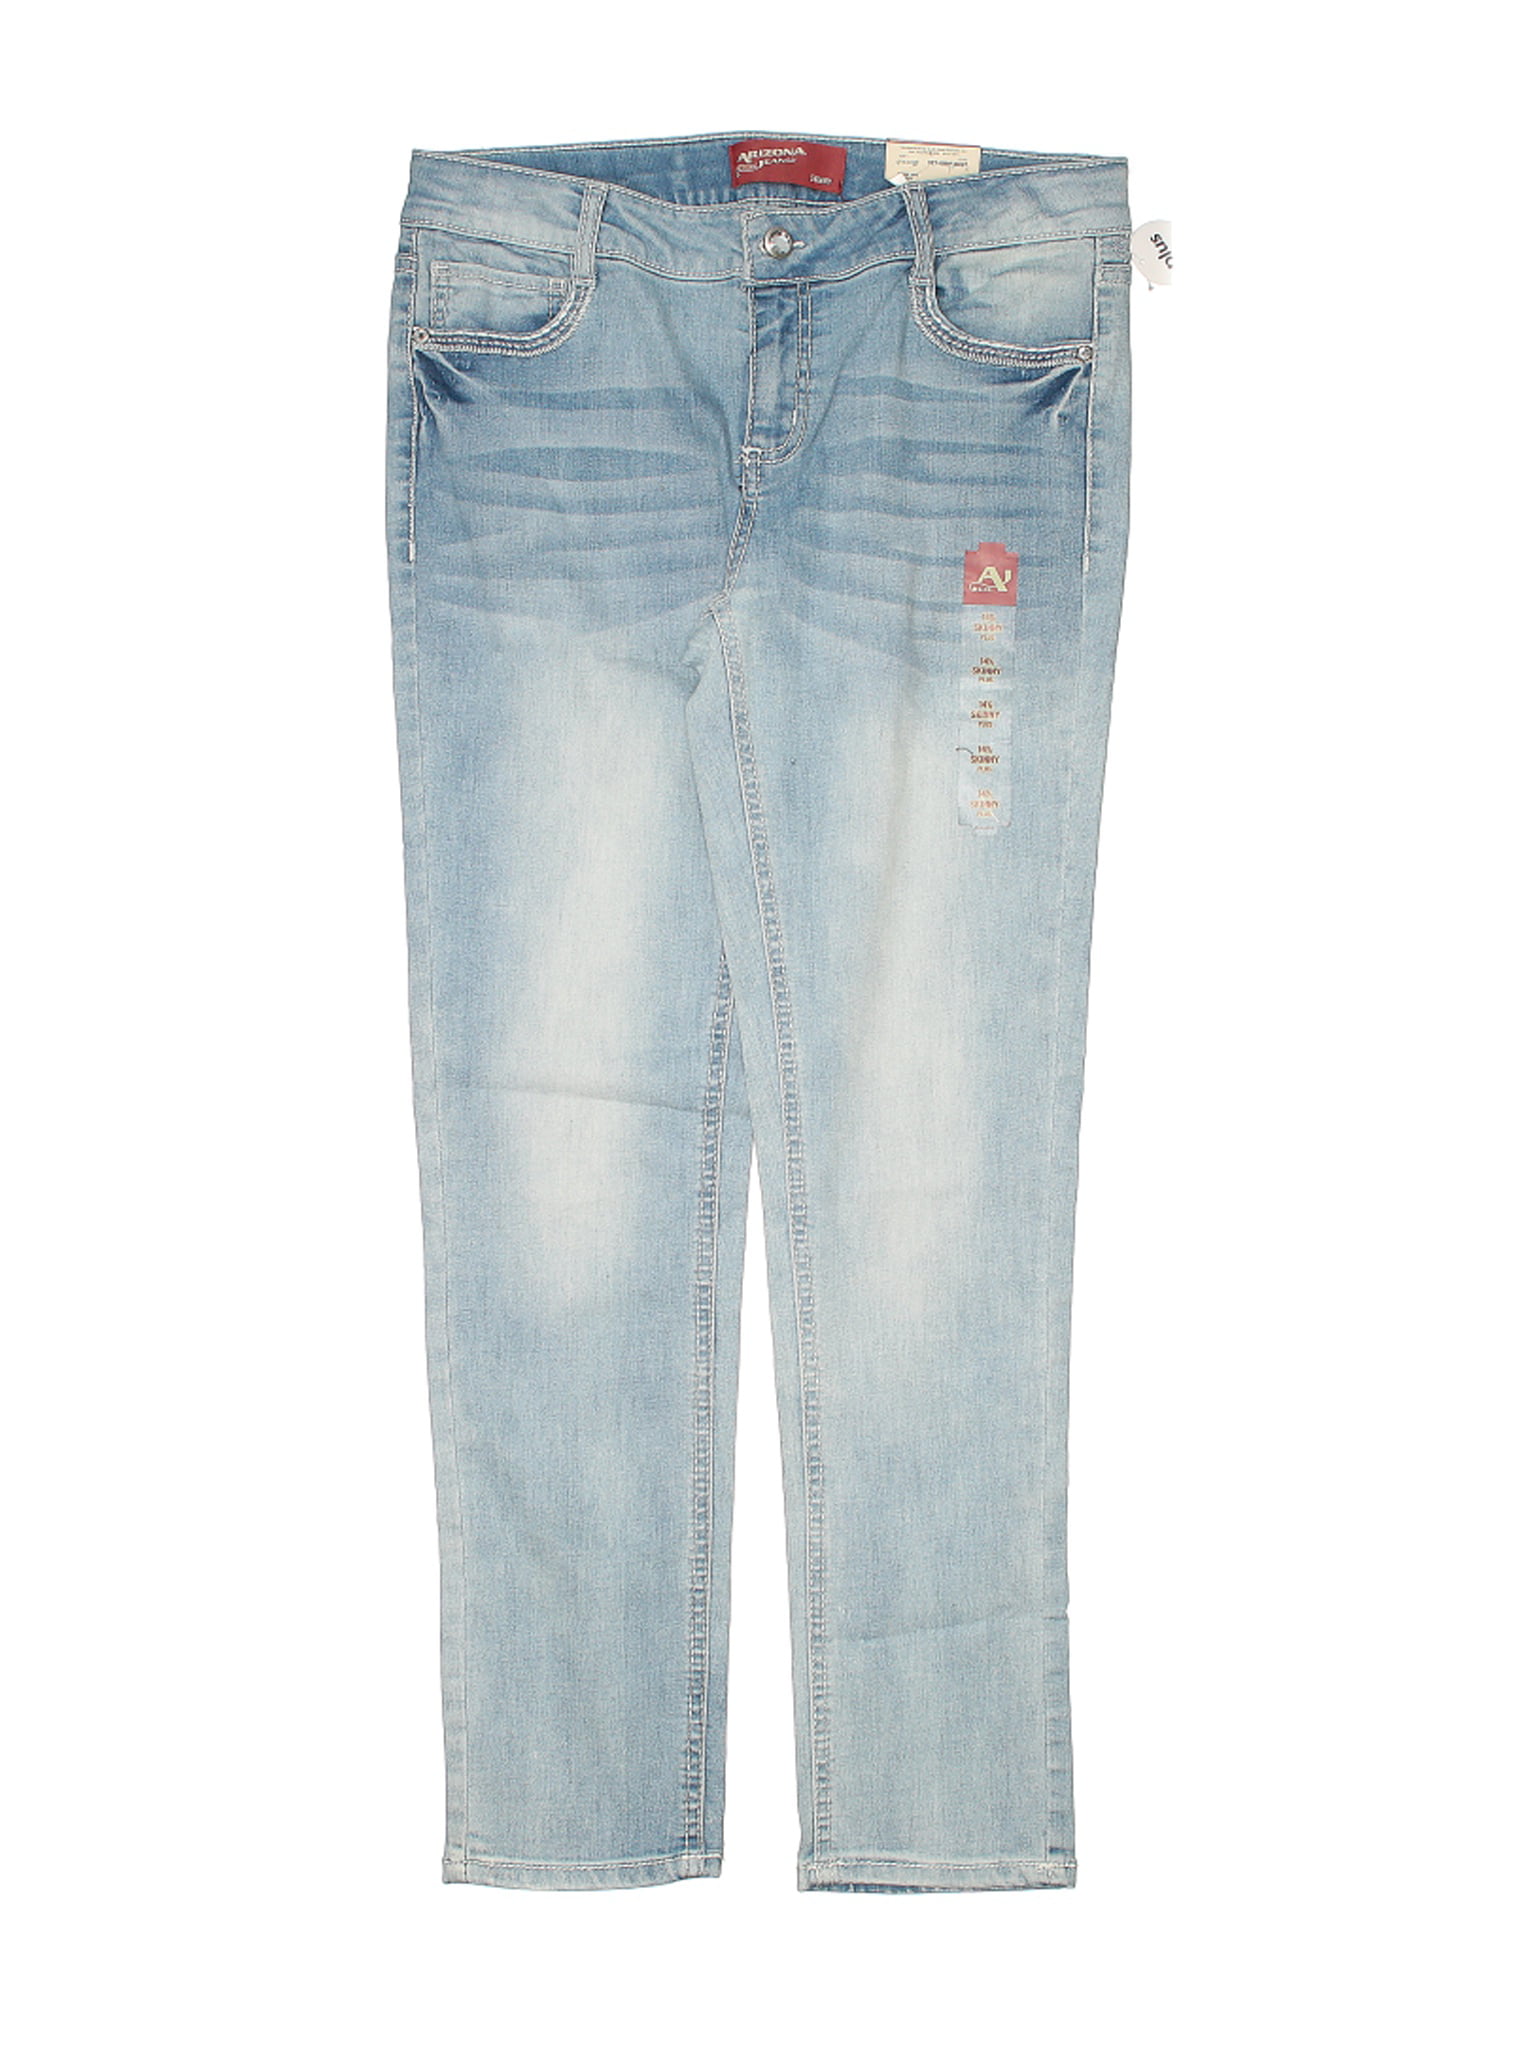 arizona jeans company